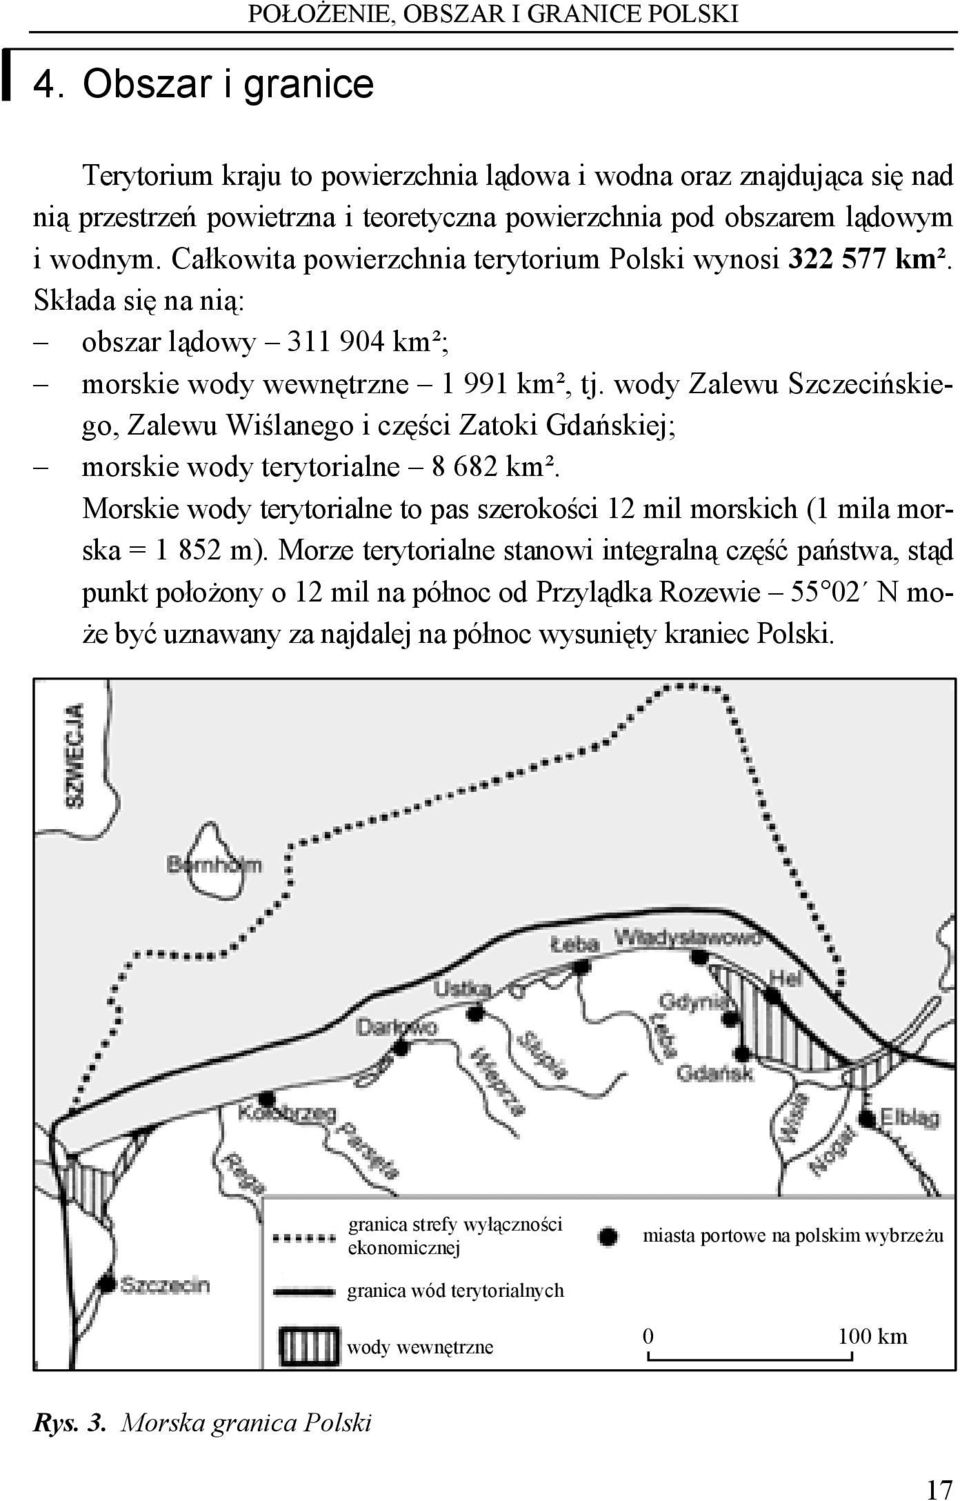 wody Zalewu Szczecińskiego, Zalewu Wiślanego i części Zatoki Gdańskiej; morskie wody terytorialne 8 682 km². Morskie wody terytorialne to pas szerokości 12 mil morskich (1 mila morska = 1 852 m).